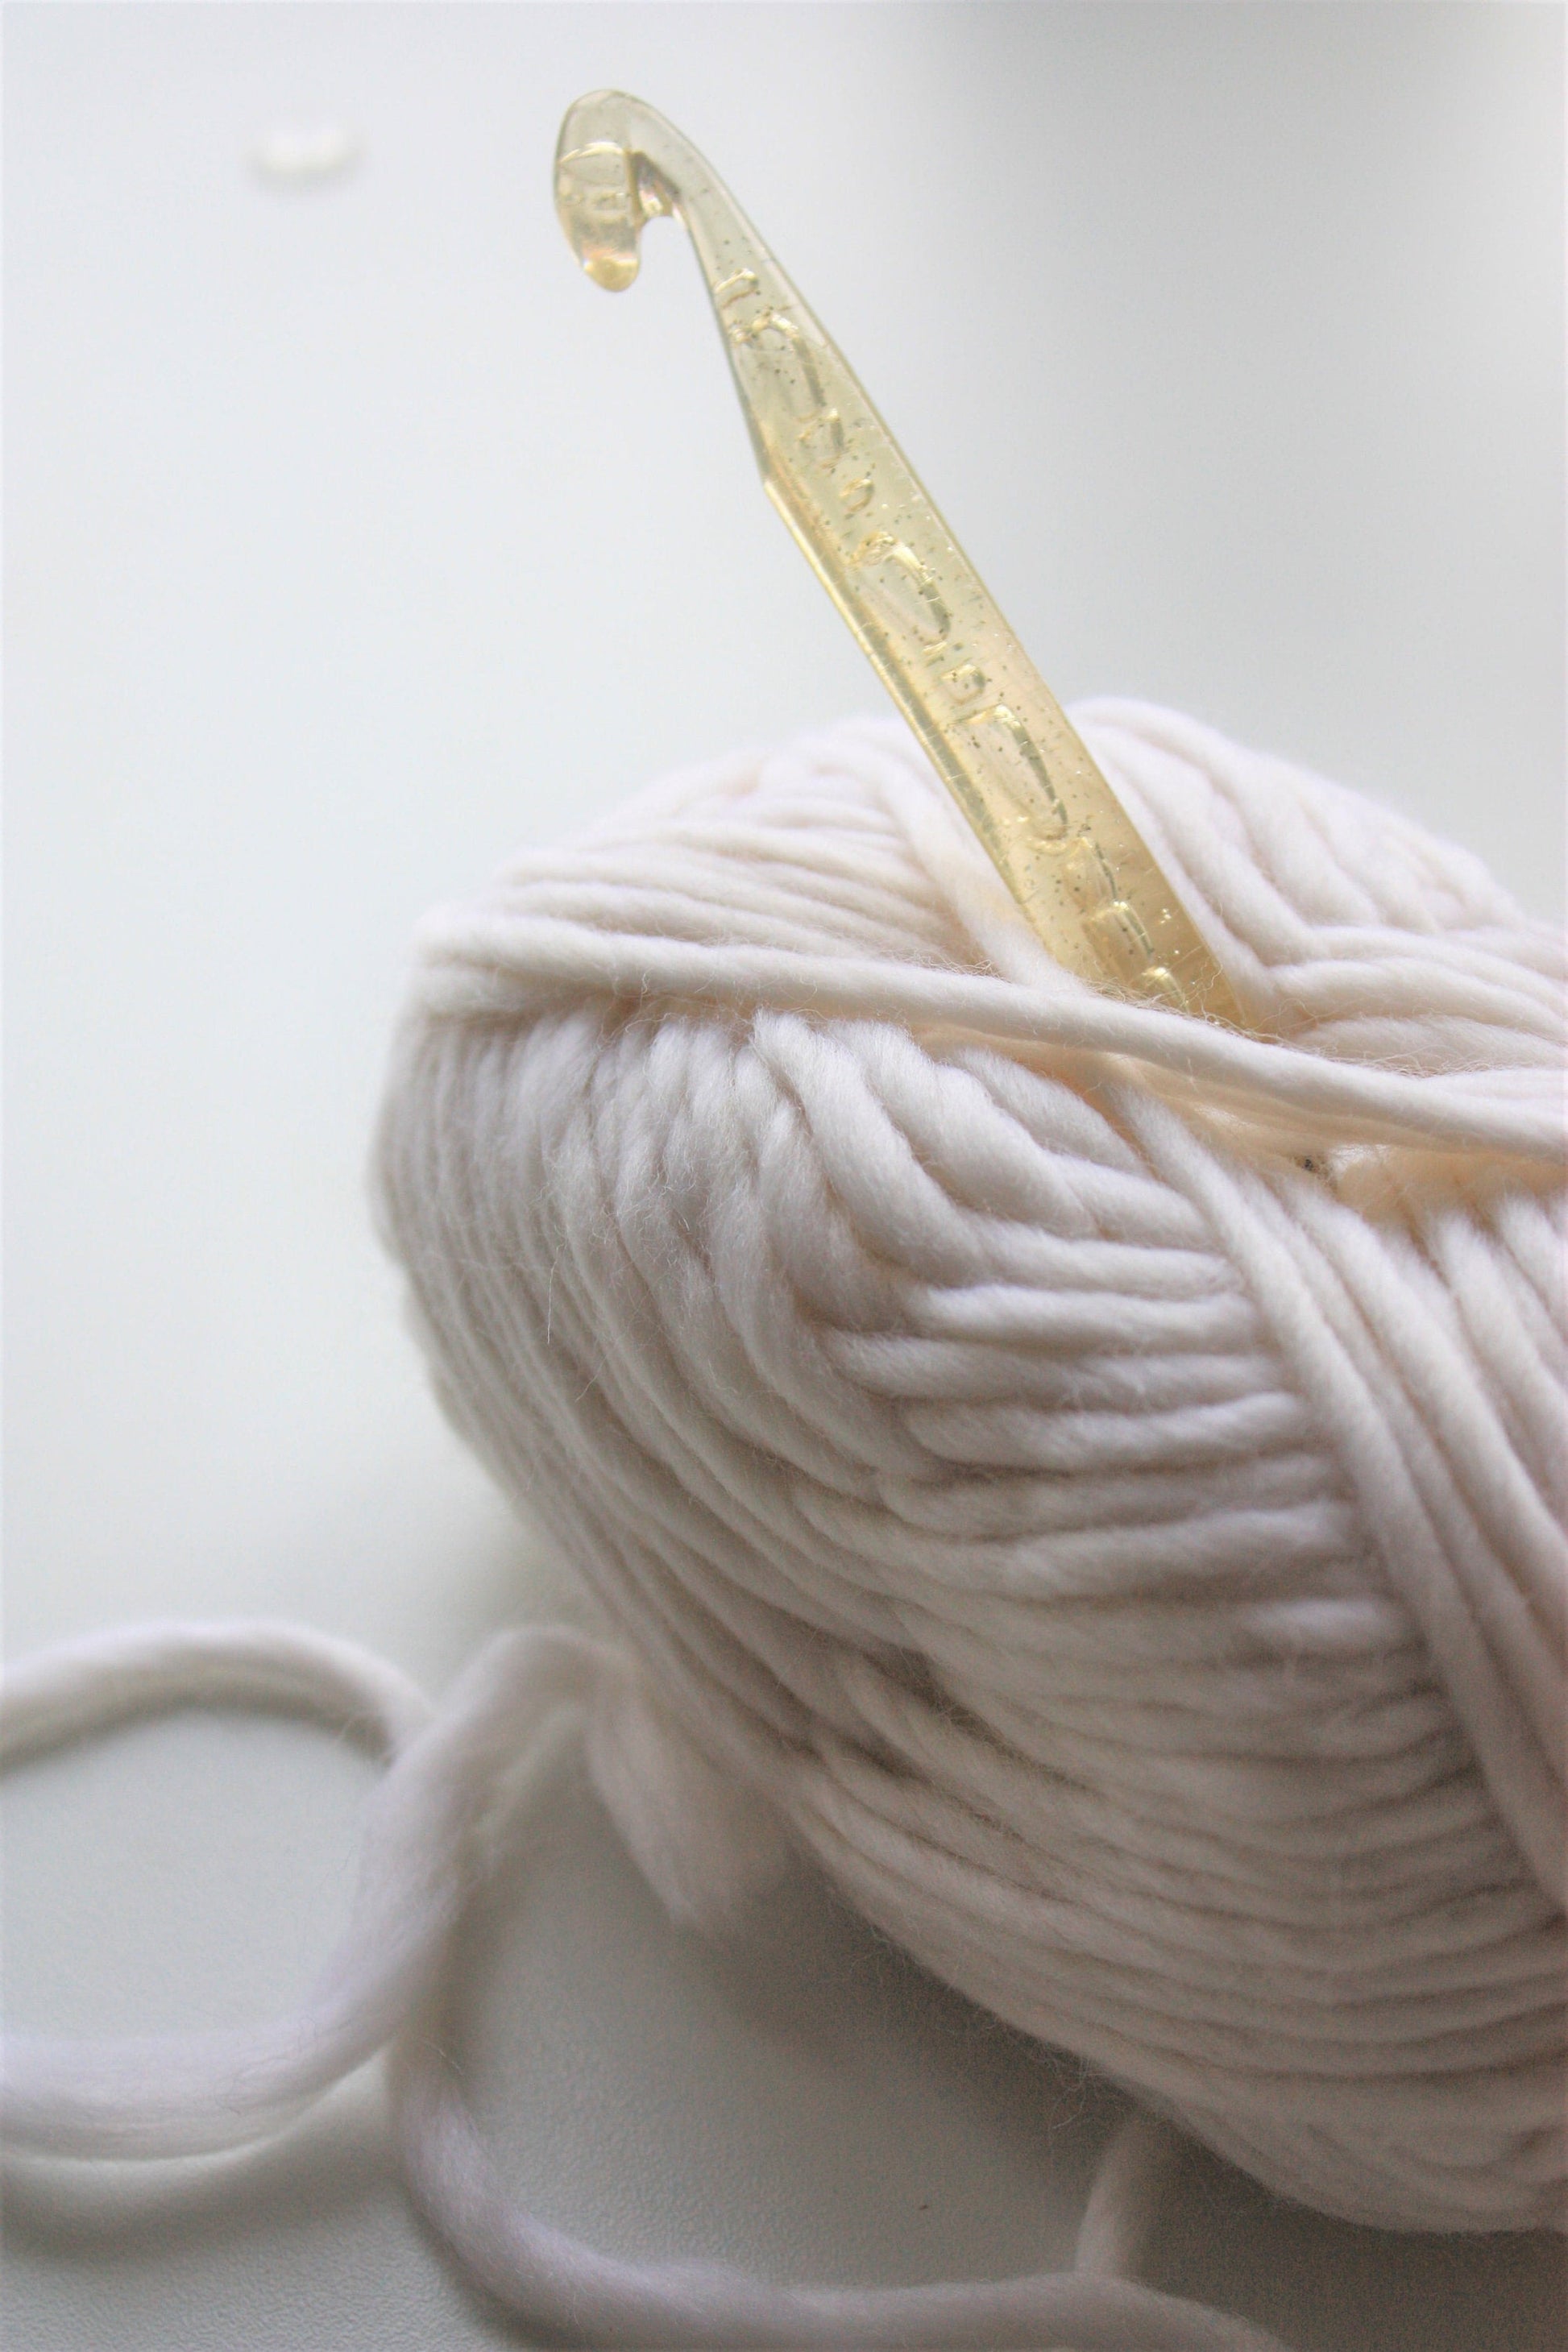 Copy of Crochet Hook 12mm,15mm - Jumbo Crochet Hook Size O, SizeP, Size Q - King & Eye